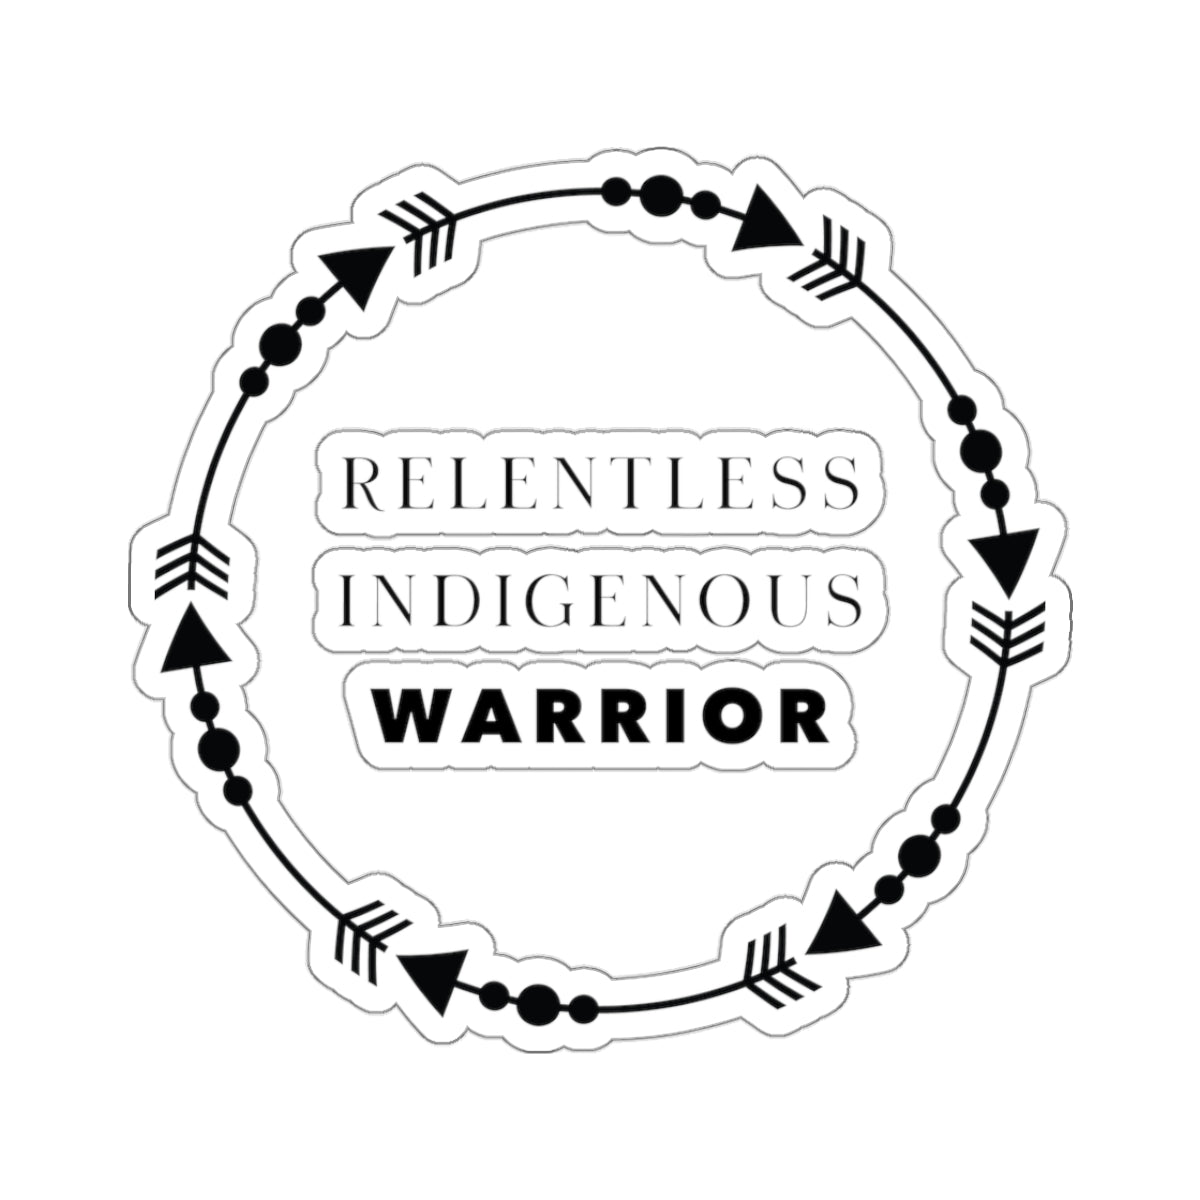 Relentless Indigenous Warrior // Stickers